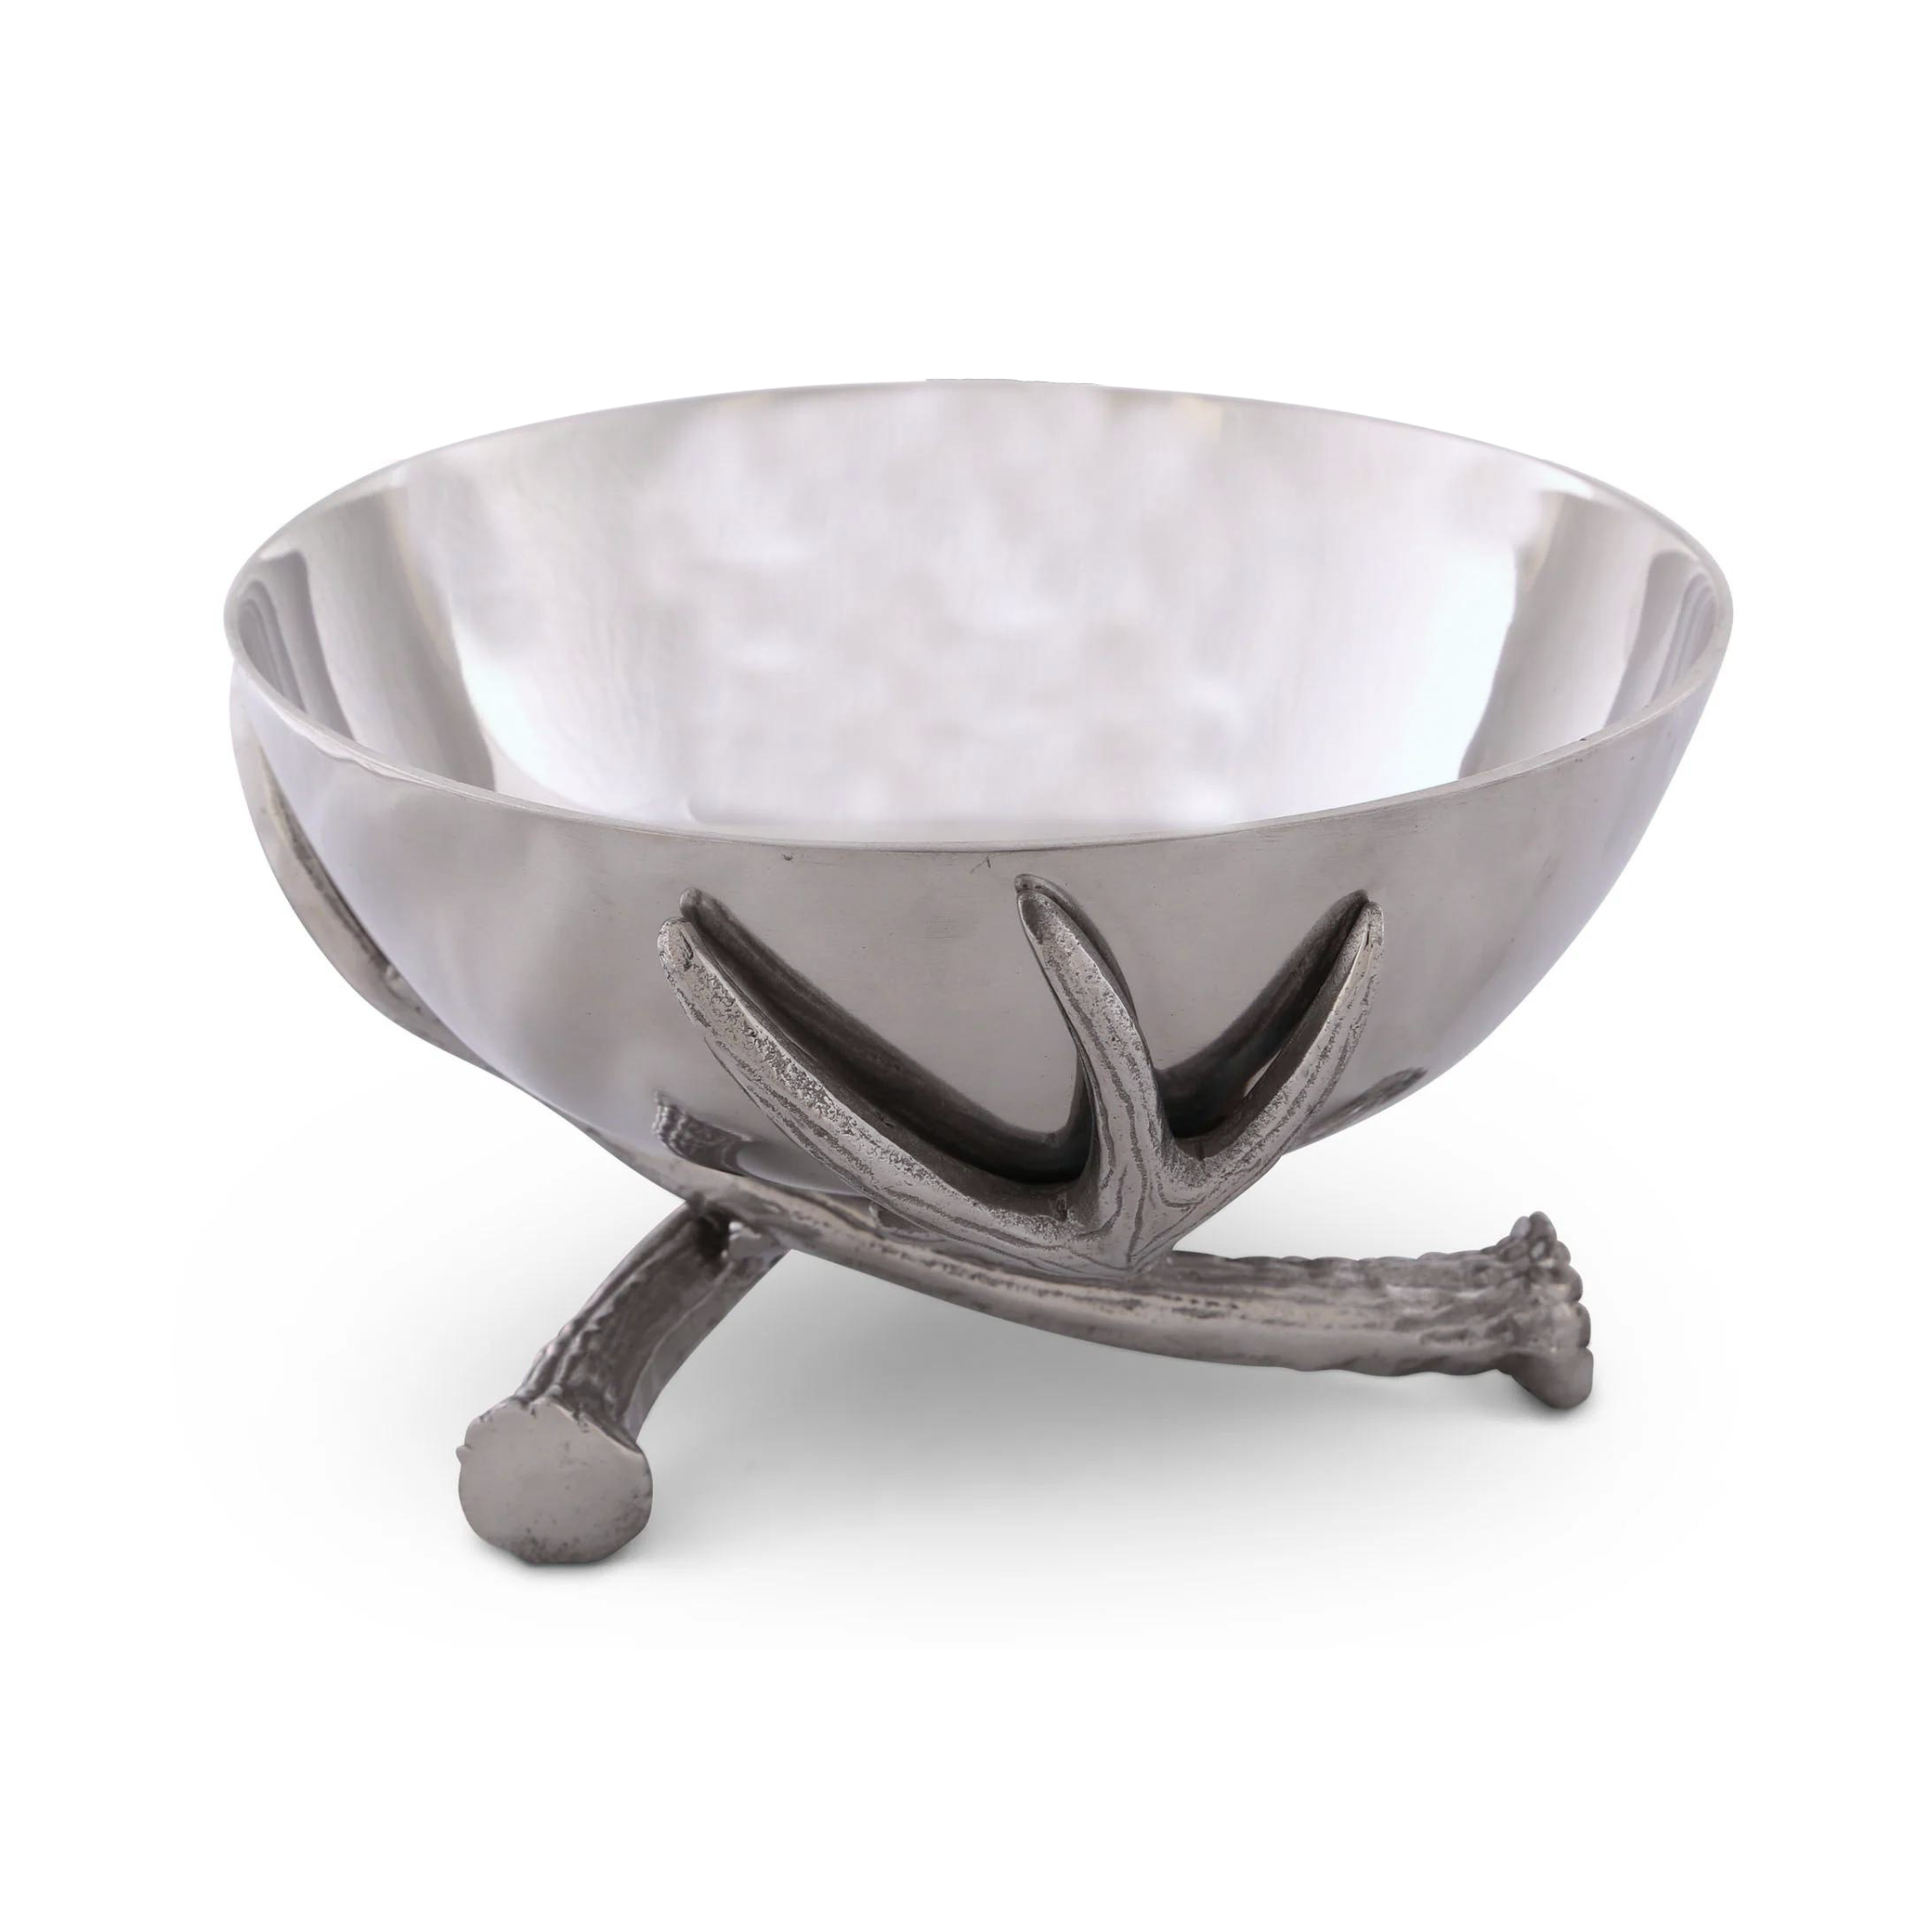 a metal bowl with 3 metal antler base